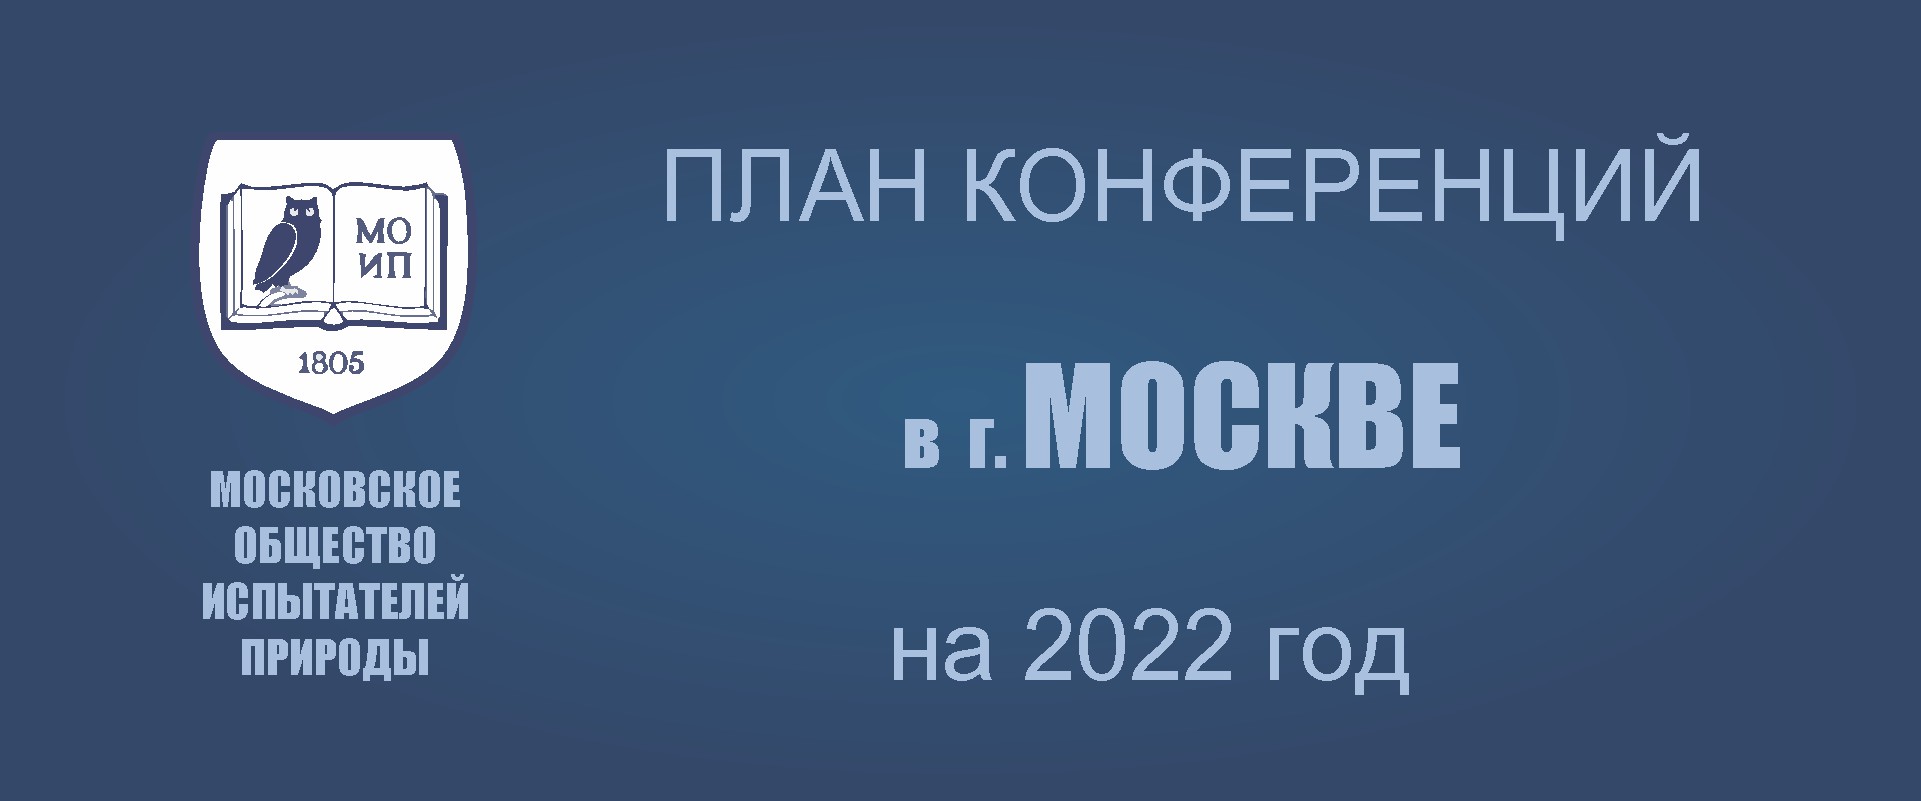 ПРЕДСТОЯЩИЕ КОНФЕРЕНЦИИ В МОСКВЕ в 2022 году